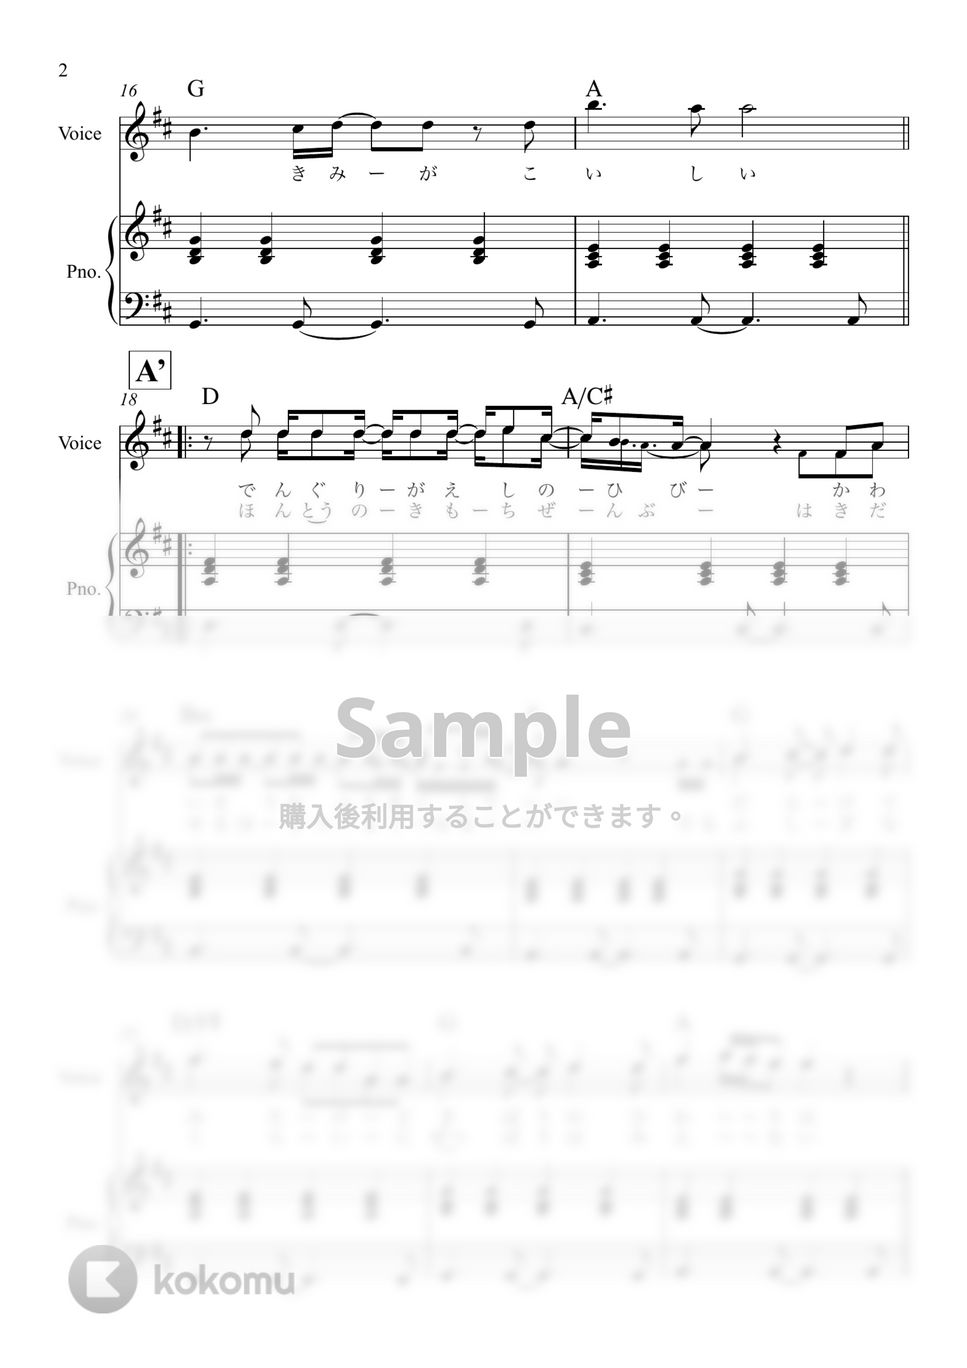 あいみょん - マリーゴールド (簡単弾き) by 泉宏樹